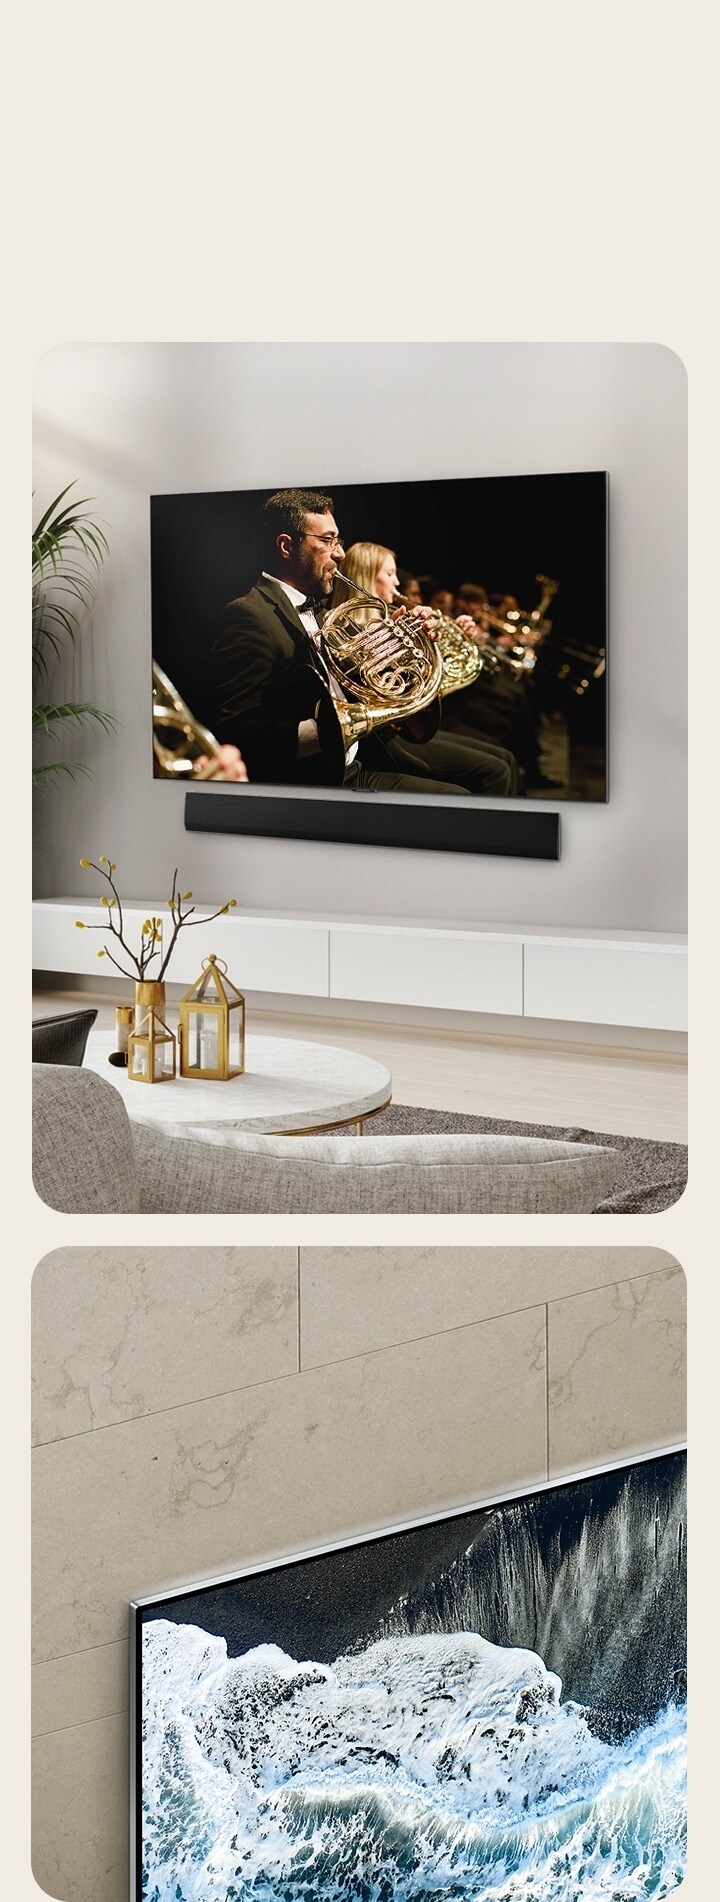 LG OLED TV, OLED G4 en un ángulo de perspectiva contra una pared de mármol que muestra cómo se fusiona con la pared. LG OLED TV, OLED G4 y una barra de sonido LG en un espacio limpio y plano contra la pared con una actuación orquestal en la pantalla.